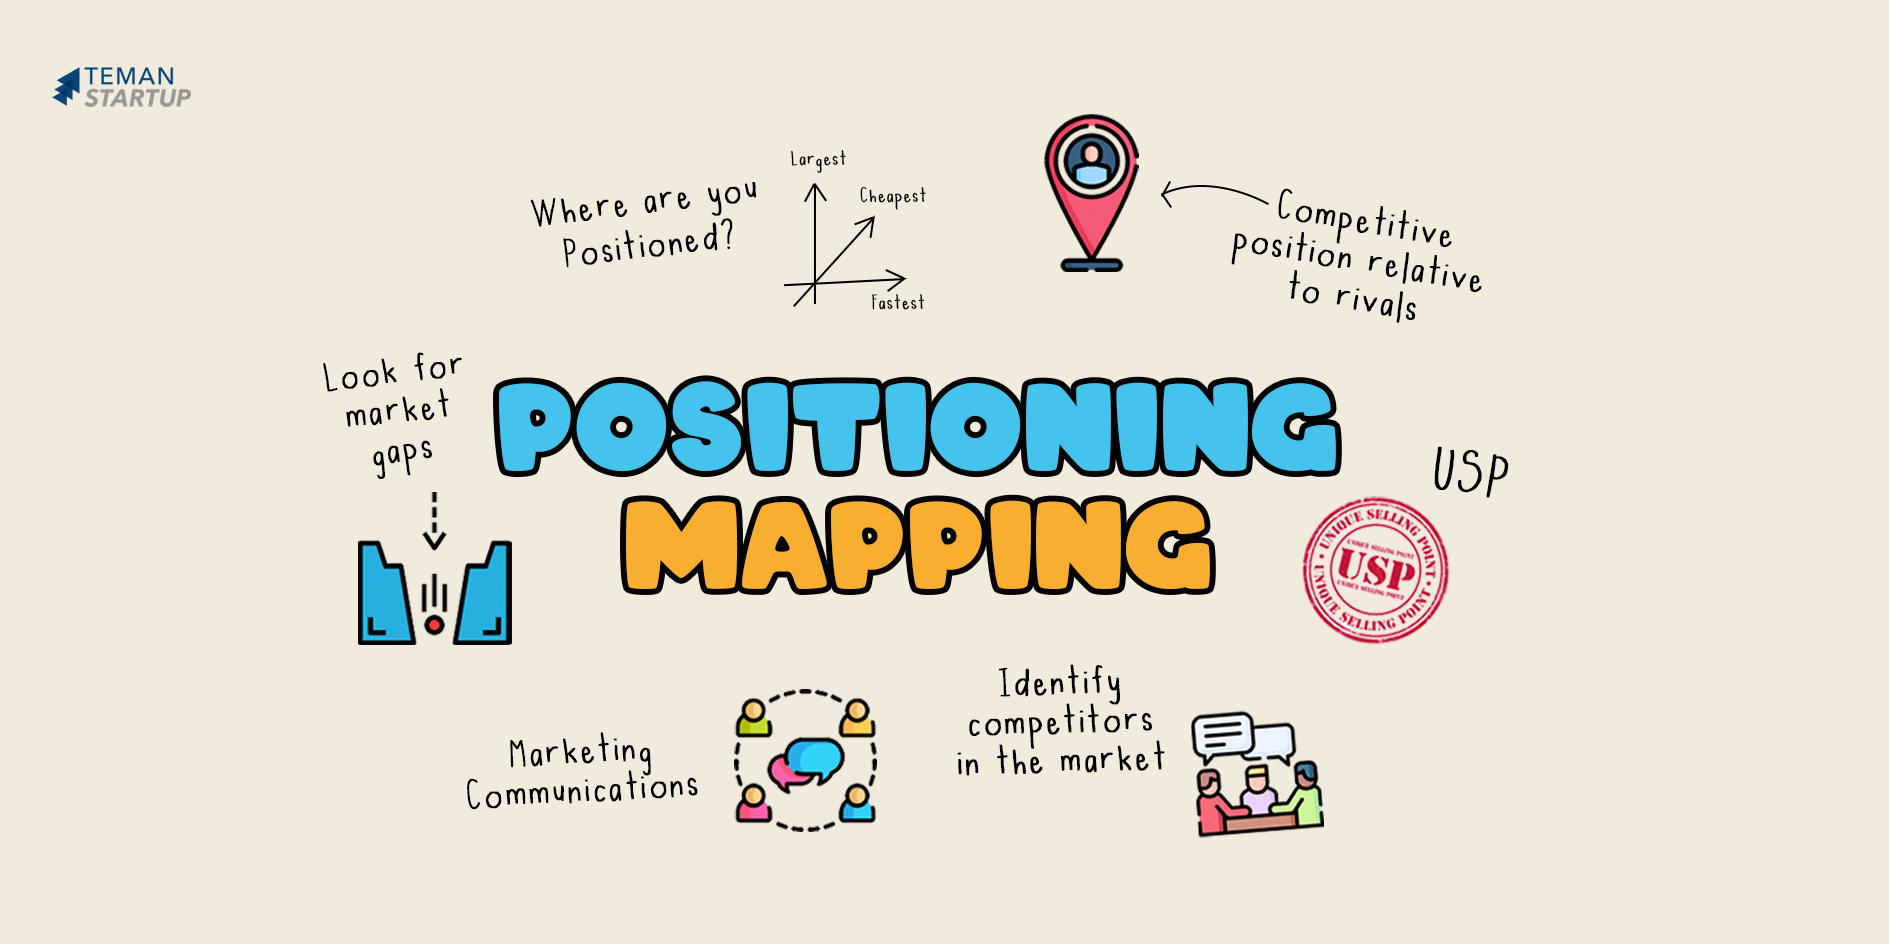 Apa Itu Teori Positioning Mapping? - Teman Startup